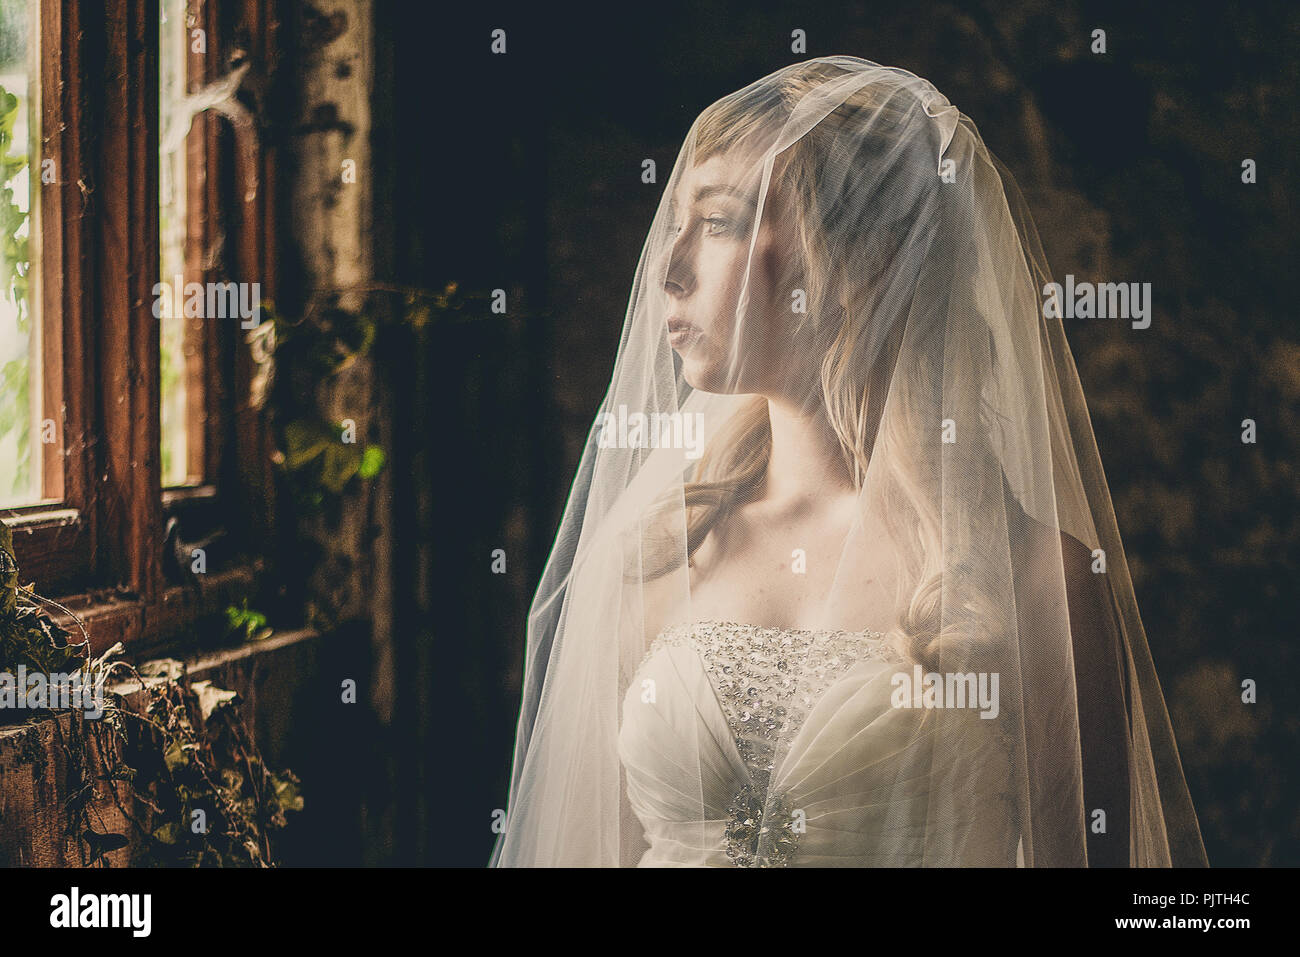 La mariée se tient dans sa robe de mariée et voile, regardant par la fenêtre d'une maison abandonnée Banque D'Images